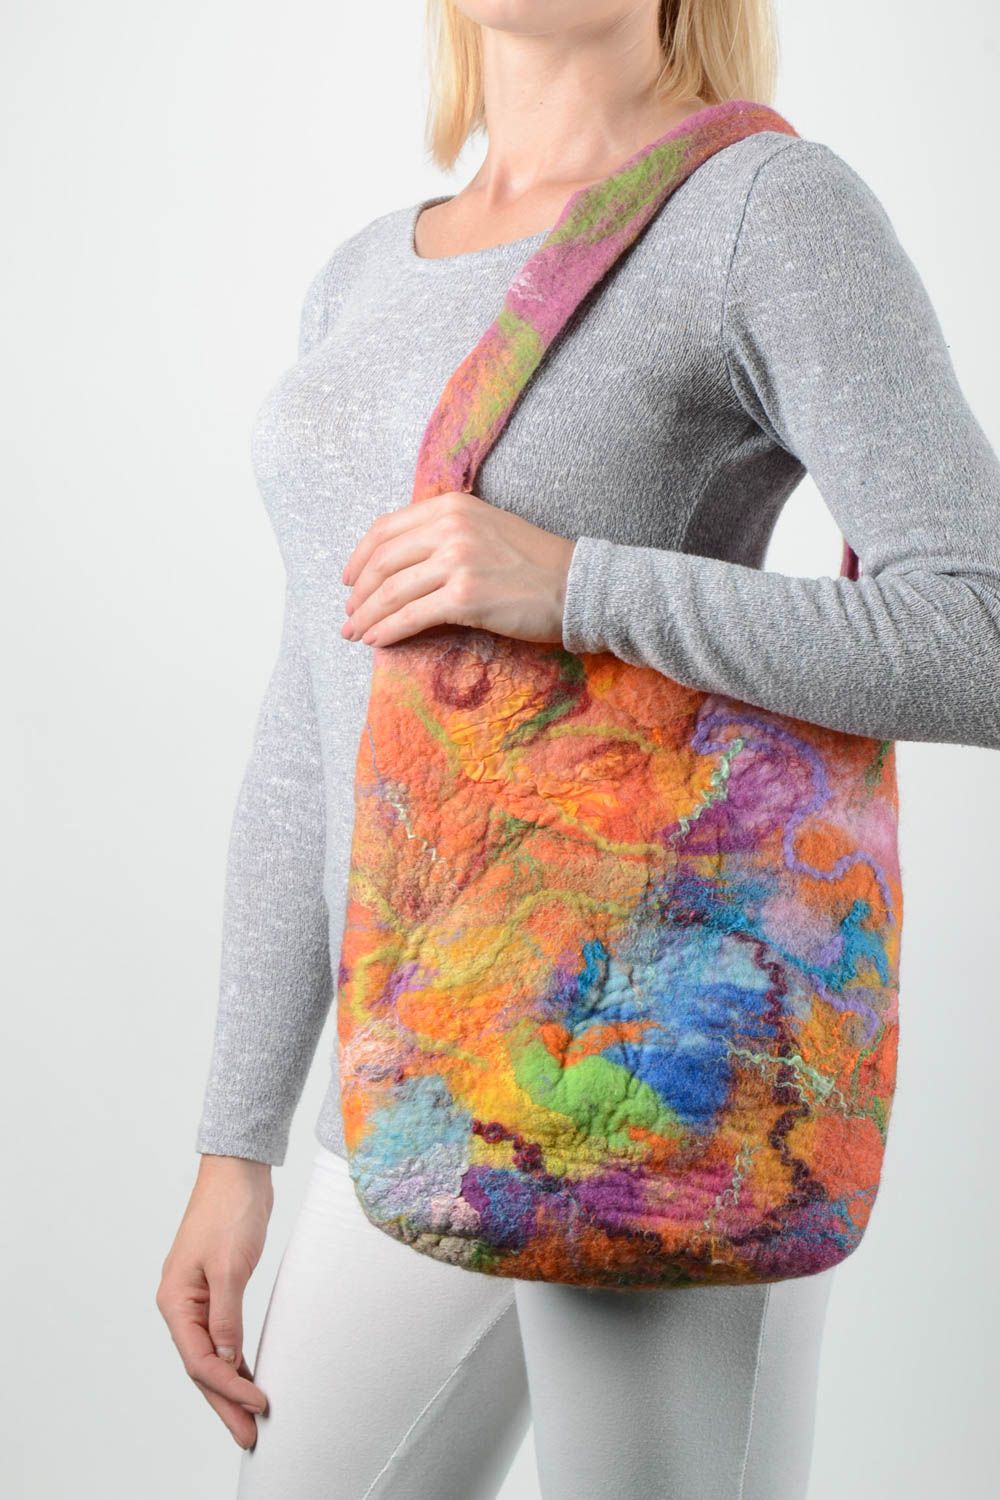 Сумка ручной работы женская сумка яркая на плечо из шерсти сумка валяние фото 1